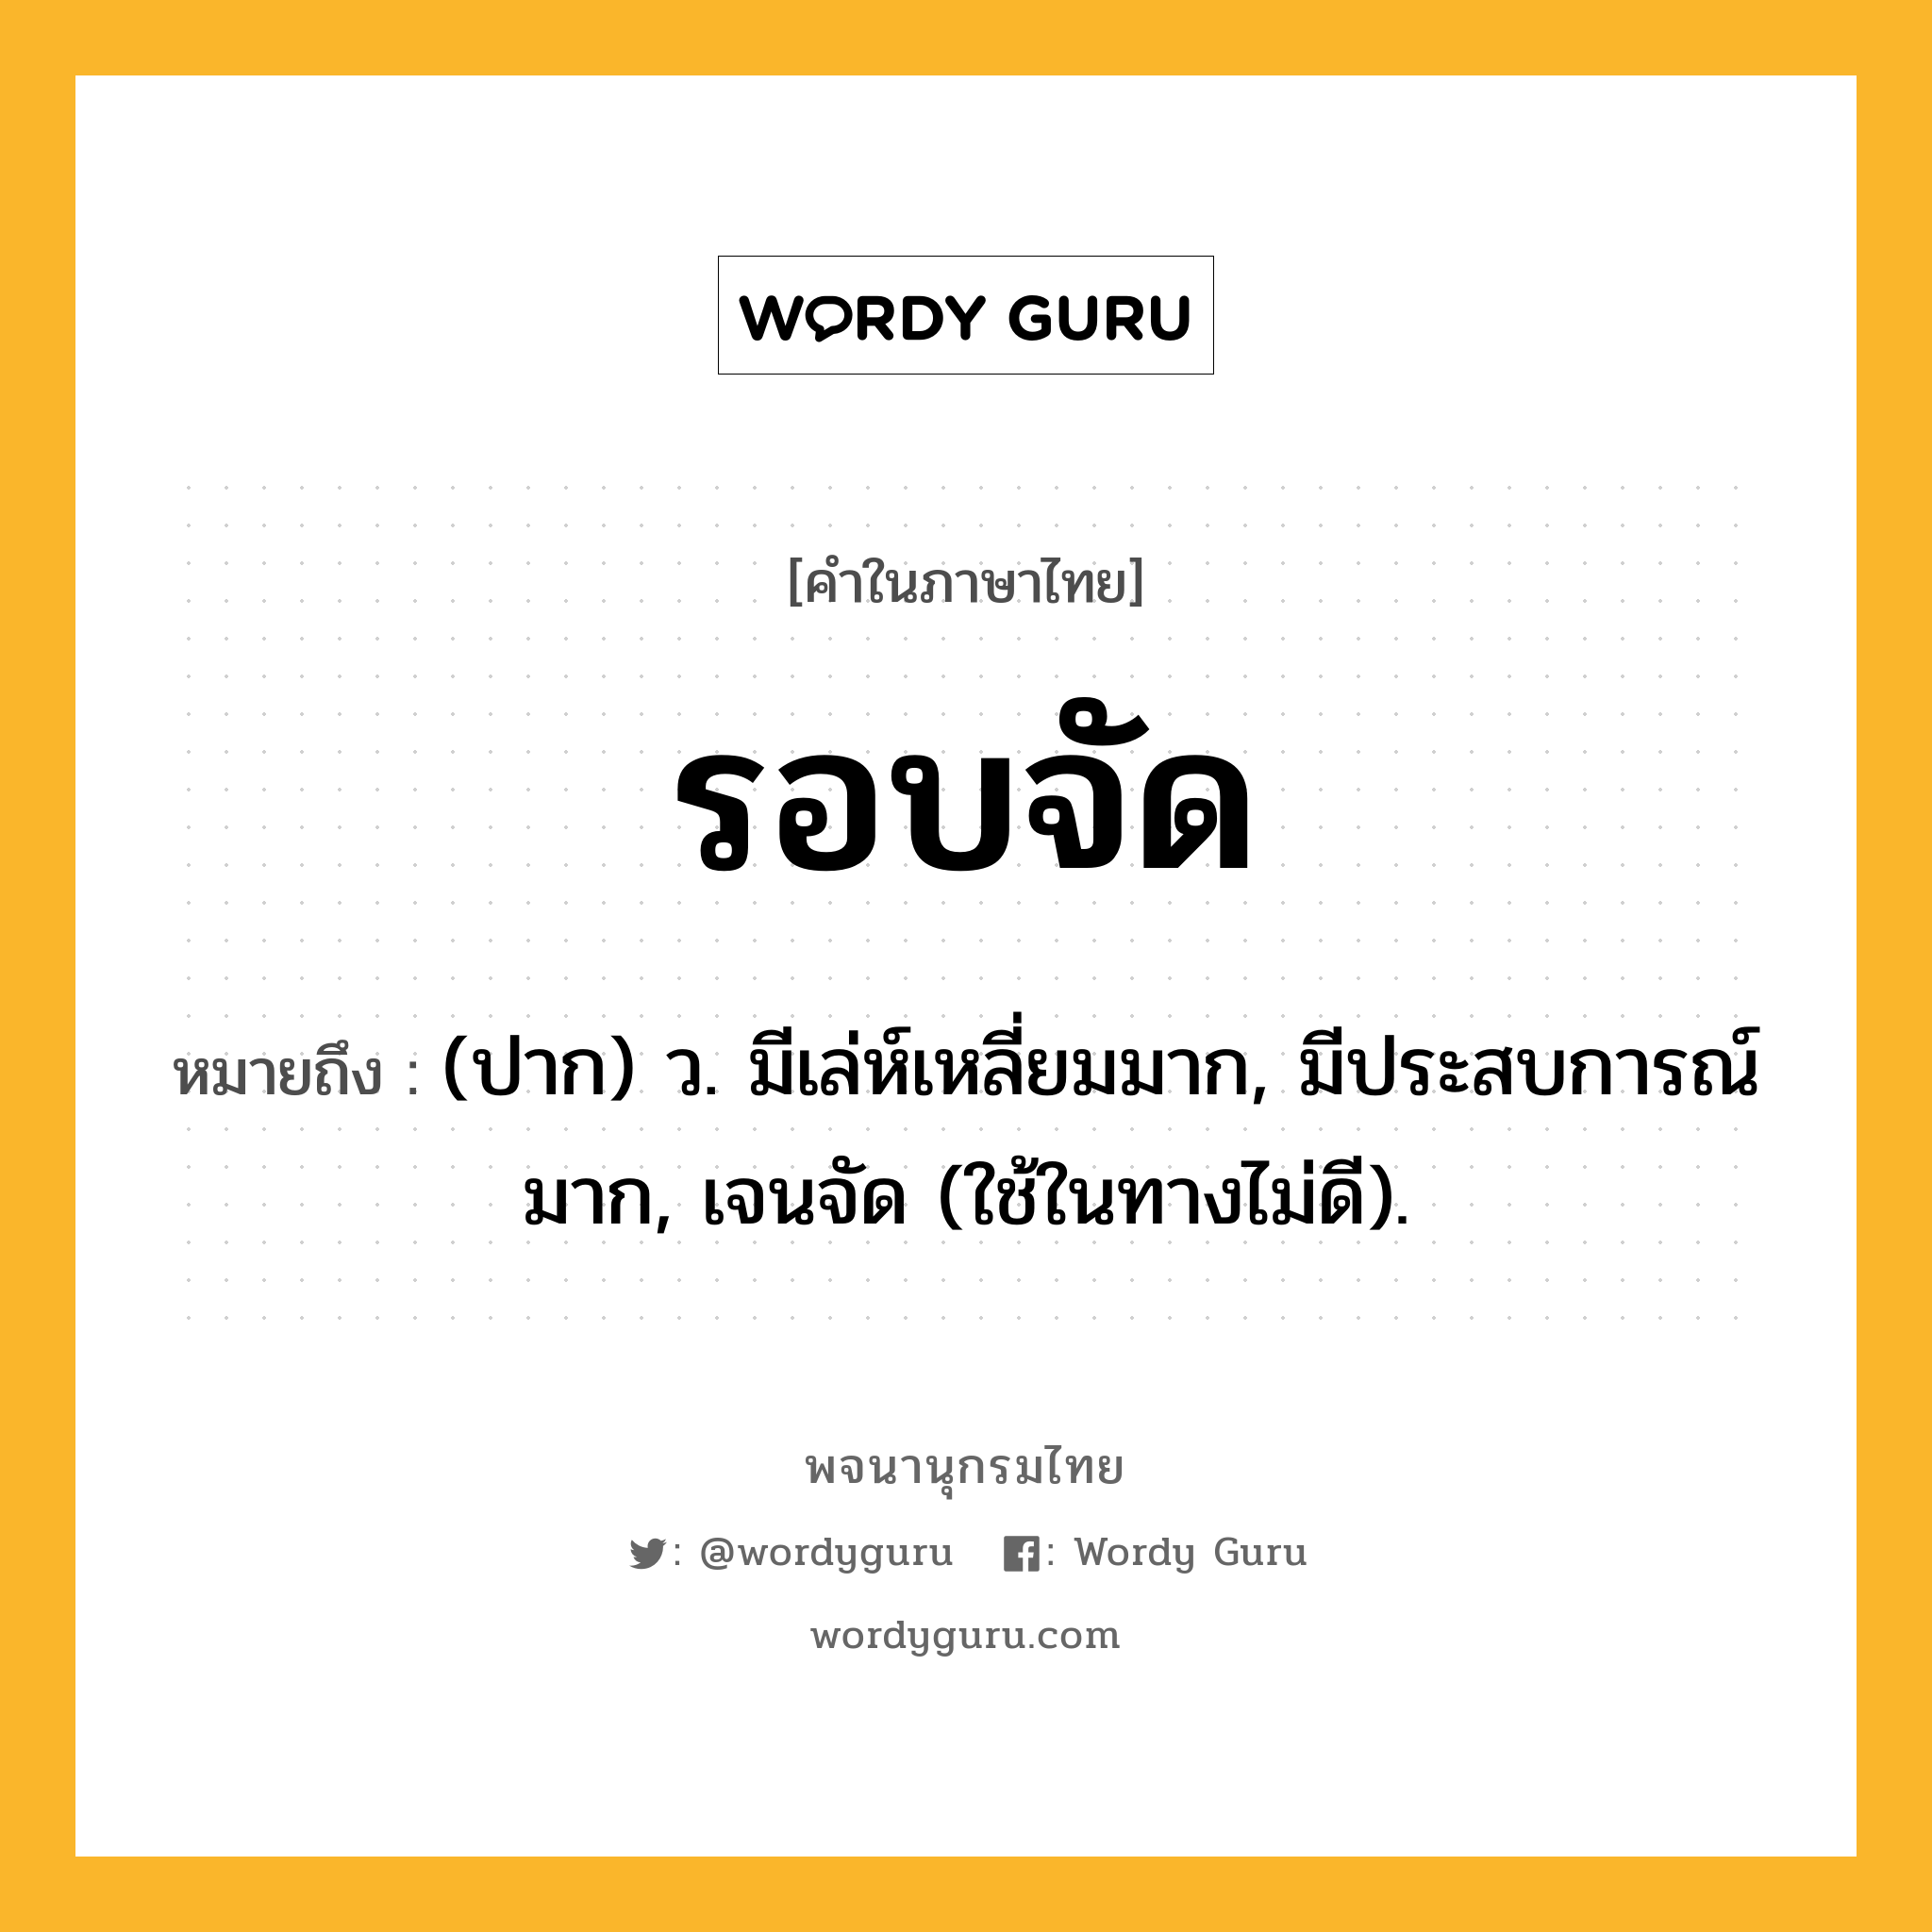 รอบจัด หมายถึงอะไร?, คำในภาษาไทย รอบจัด หมายถึง (ปาก) ว. มีเล่ห์เหลี่ยมมาก, มีประสบการณ์มาก, เจนจัด (ใช้ในทางไม่ดี).